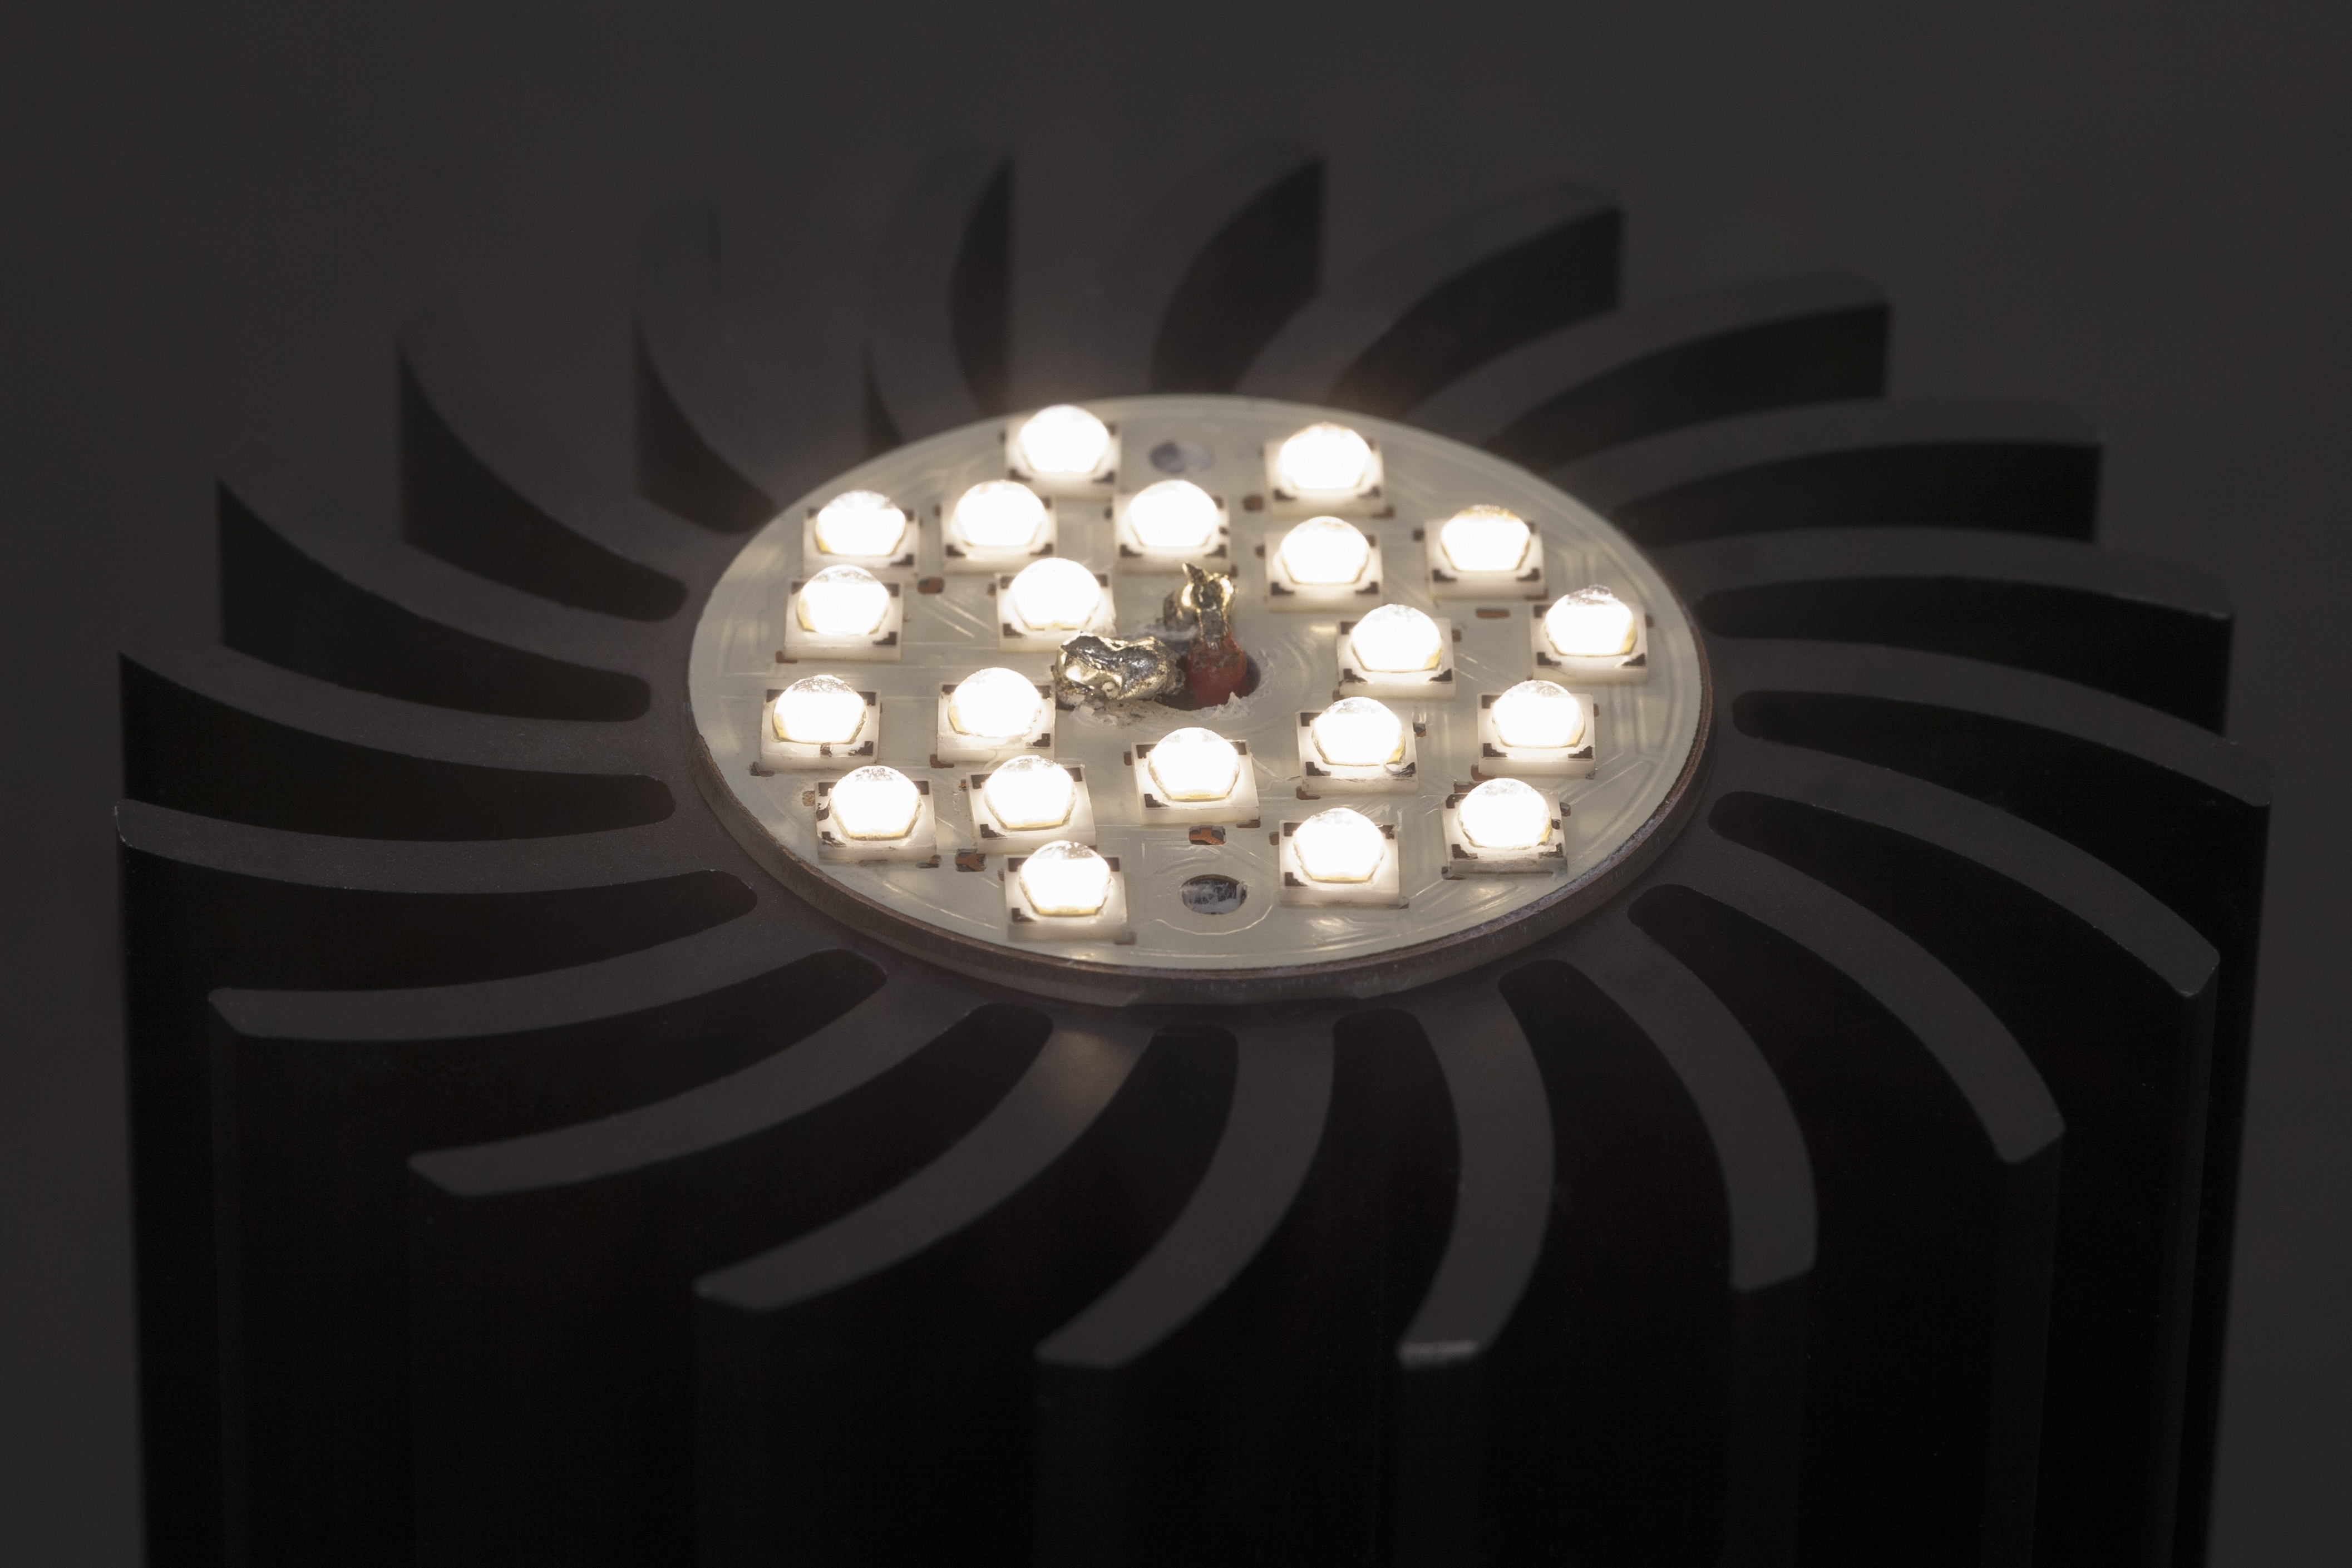 LED Modul mit GaN-Treiber und Spannungskonverter für adaptive Beleuchtung